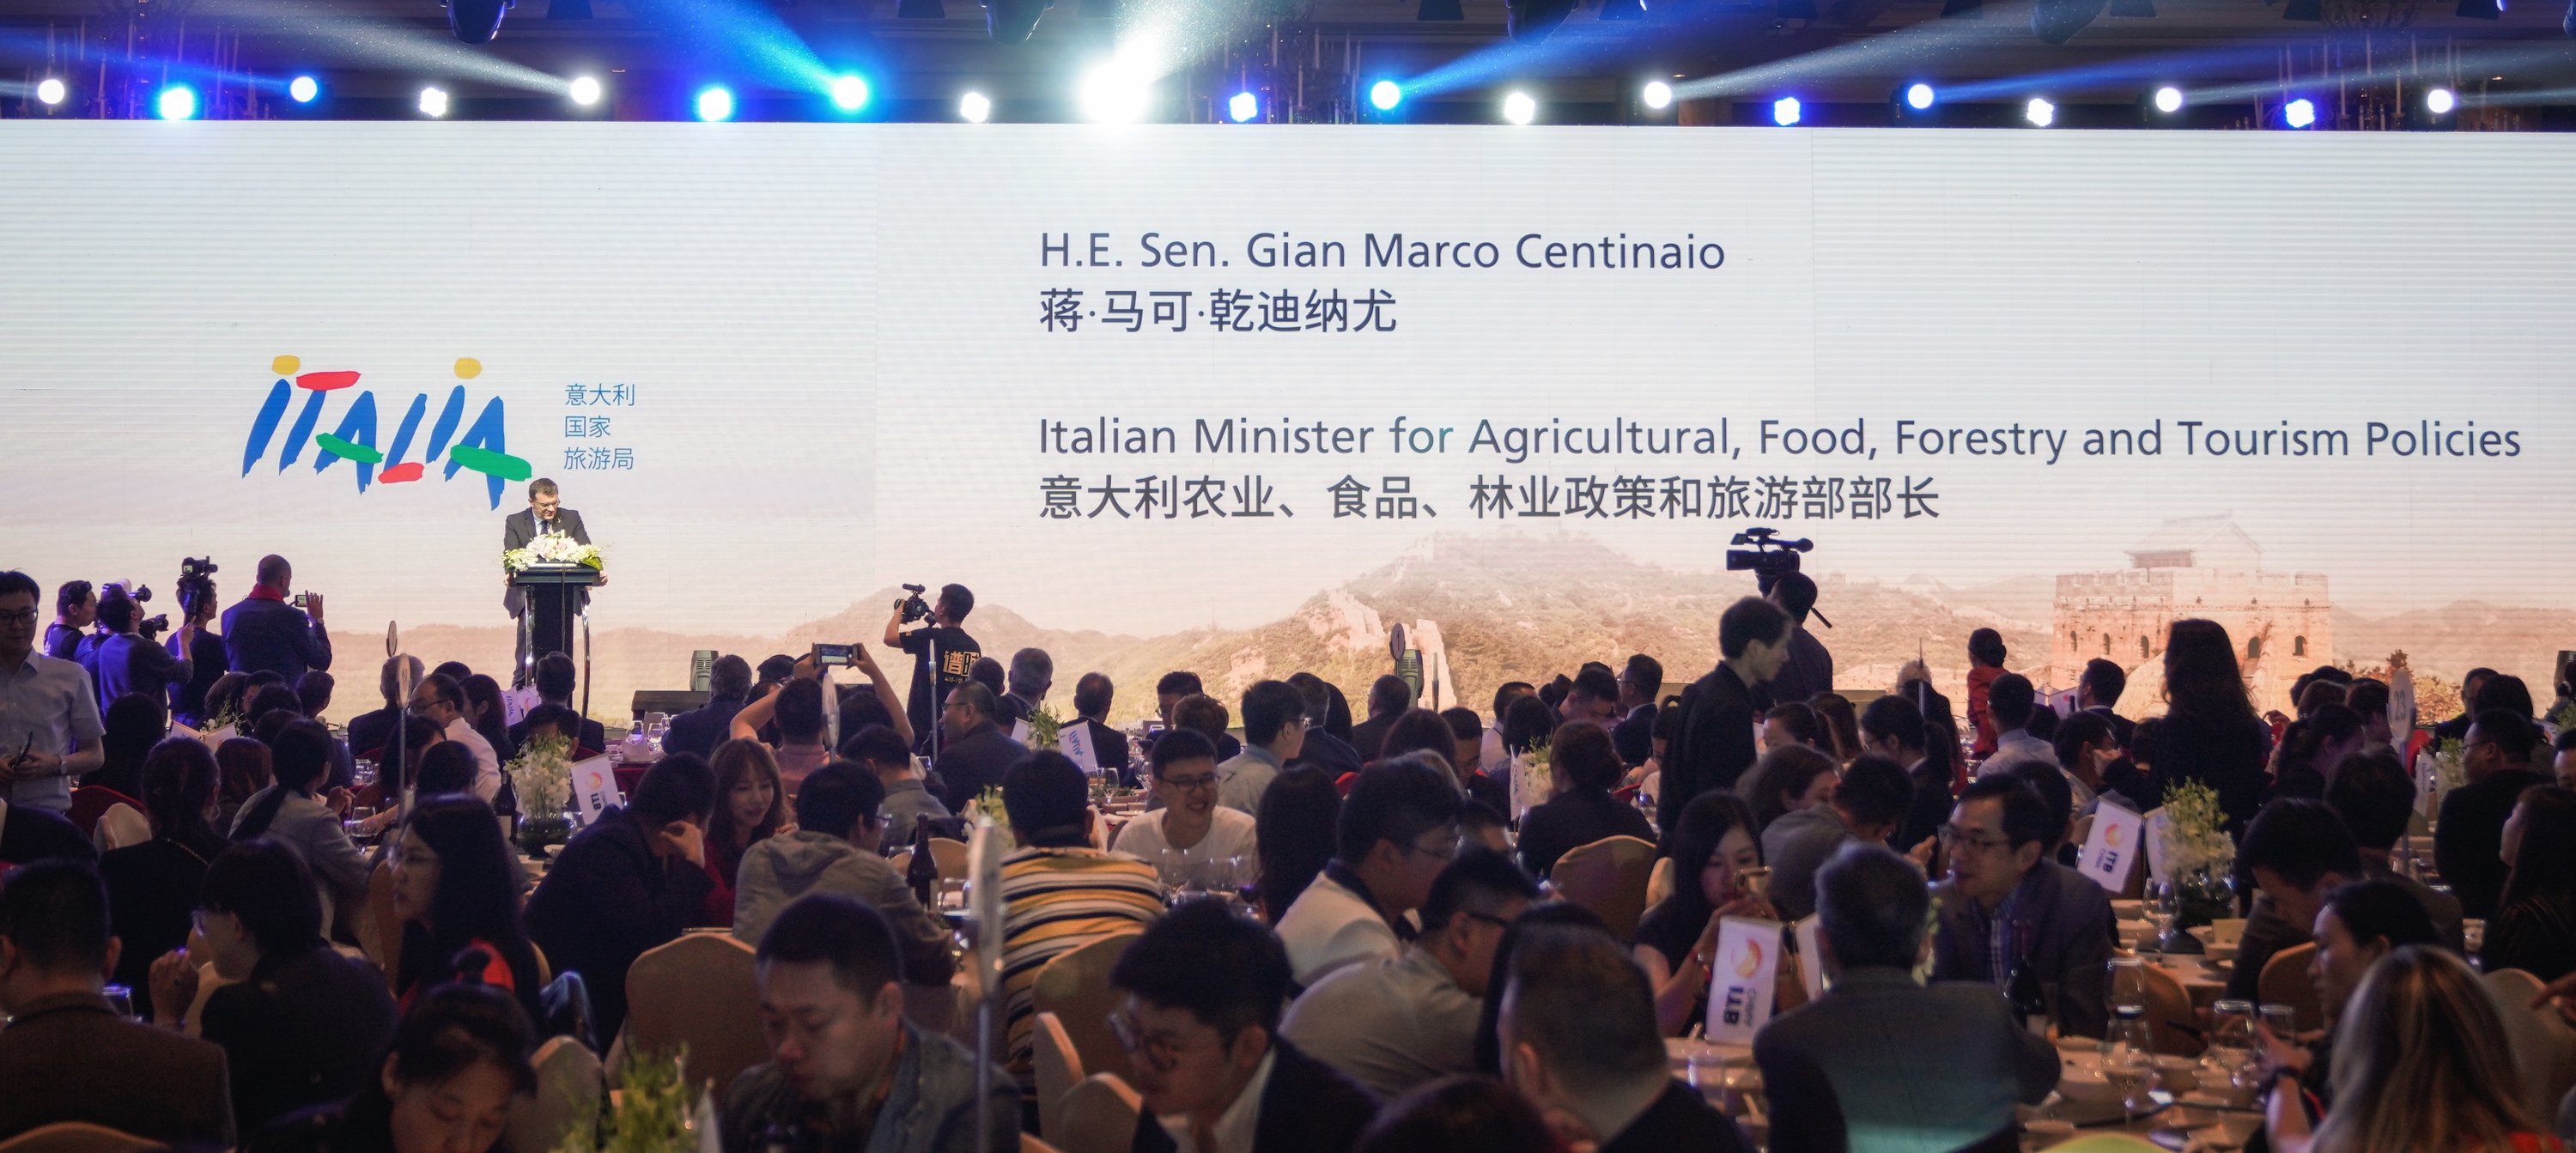 意大利农业、食品、林业政策和旅游部部长，蒋·马可·乾迪纳尤